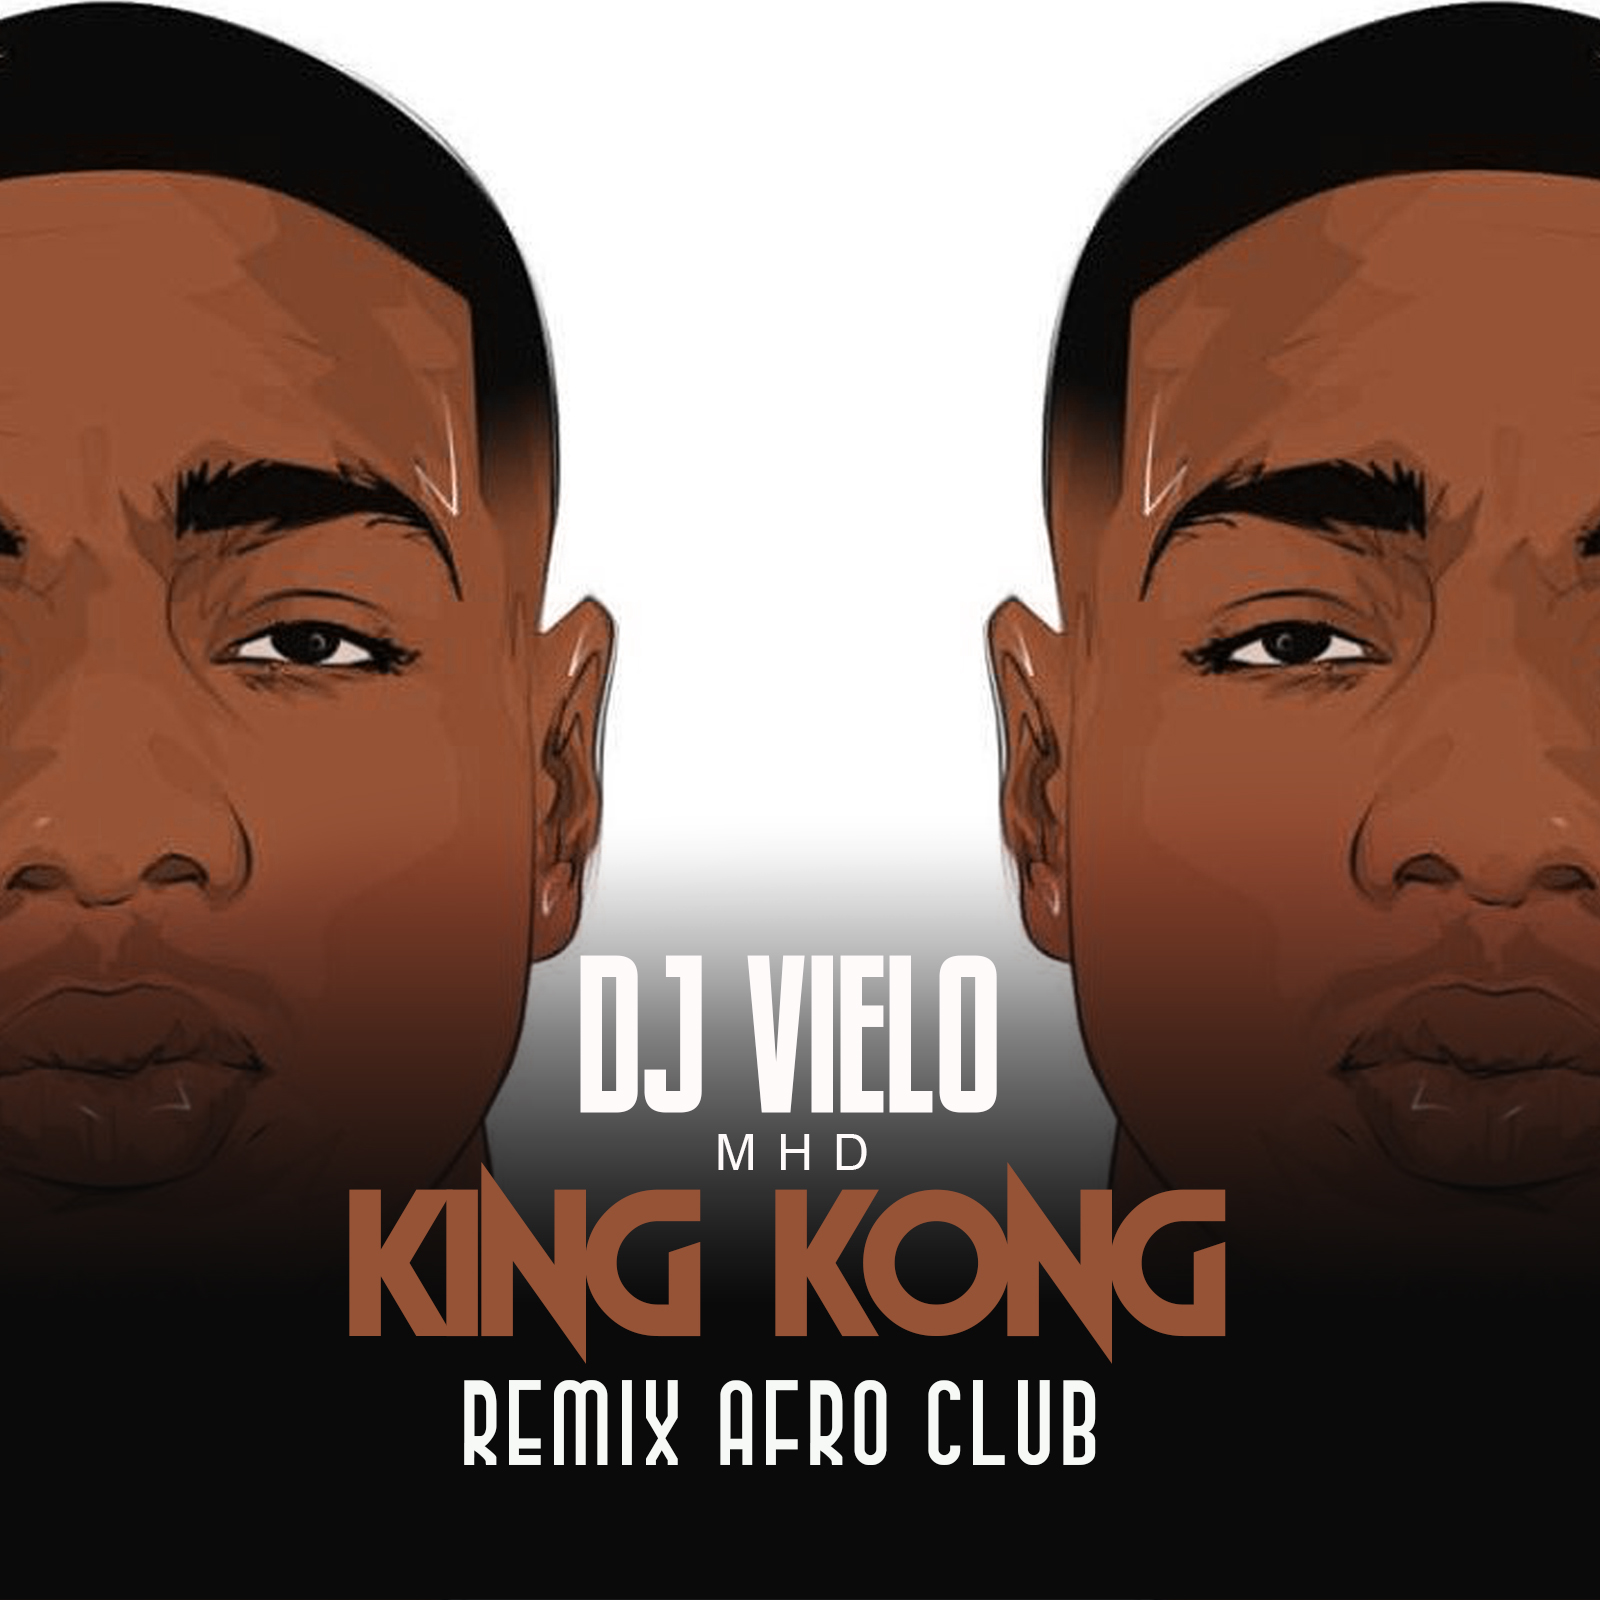 Download Dj Vielo X MHD - AFRO TRAP Part.11 (King Kong) Remix Afro Club DISPO SUR SPOTIFY, DEEZER, ITUNES